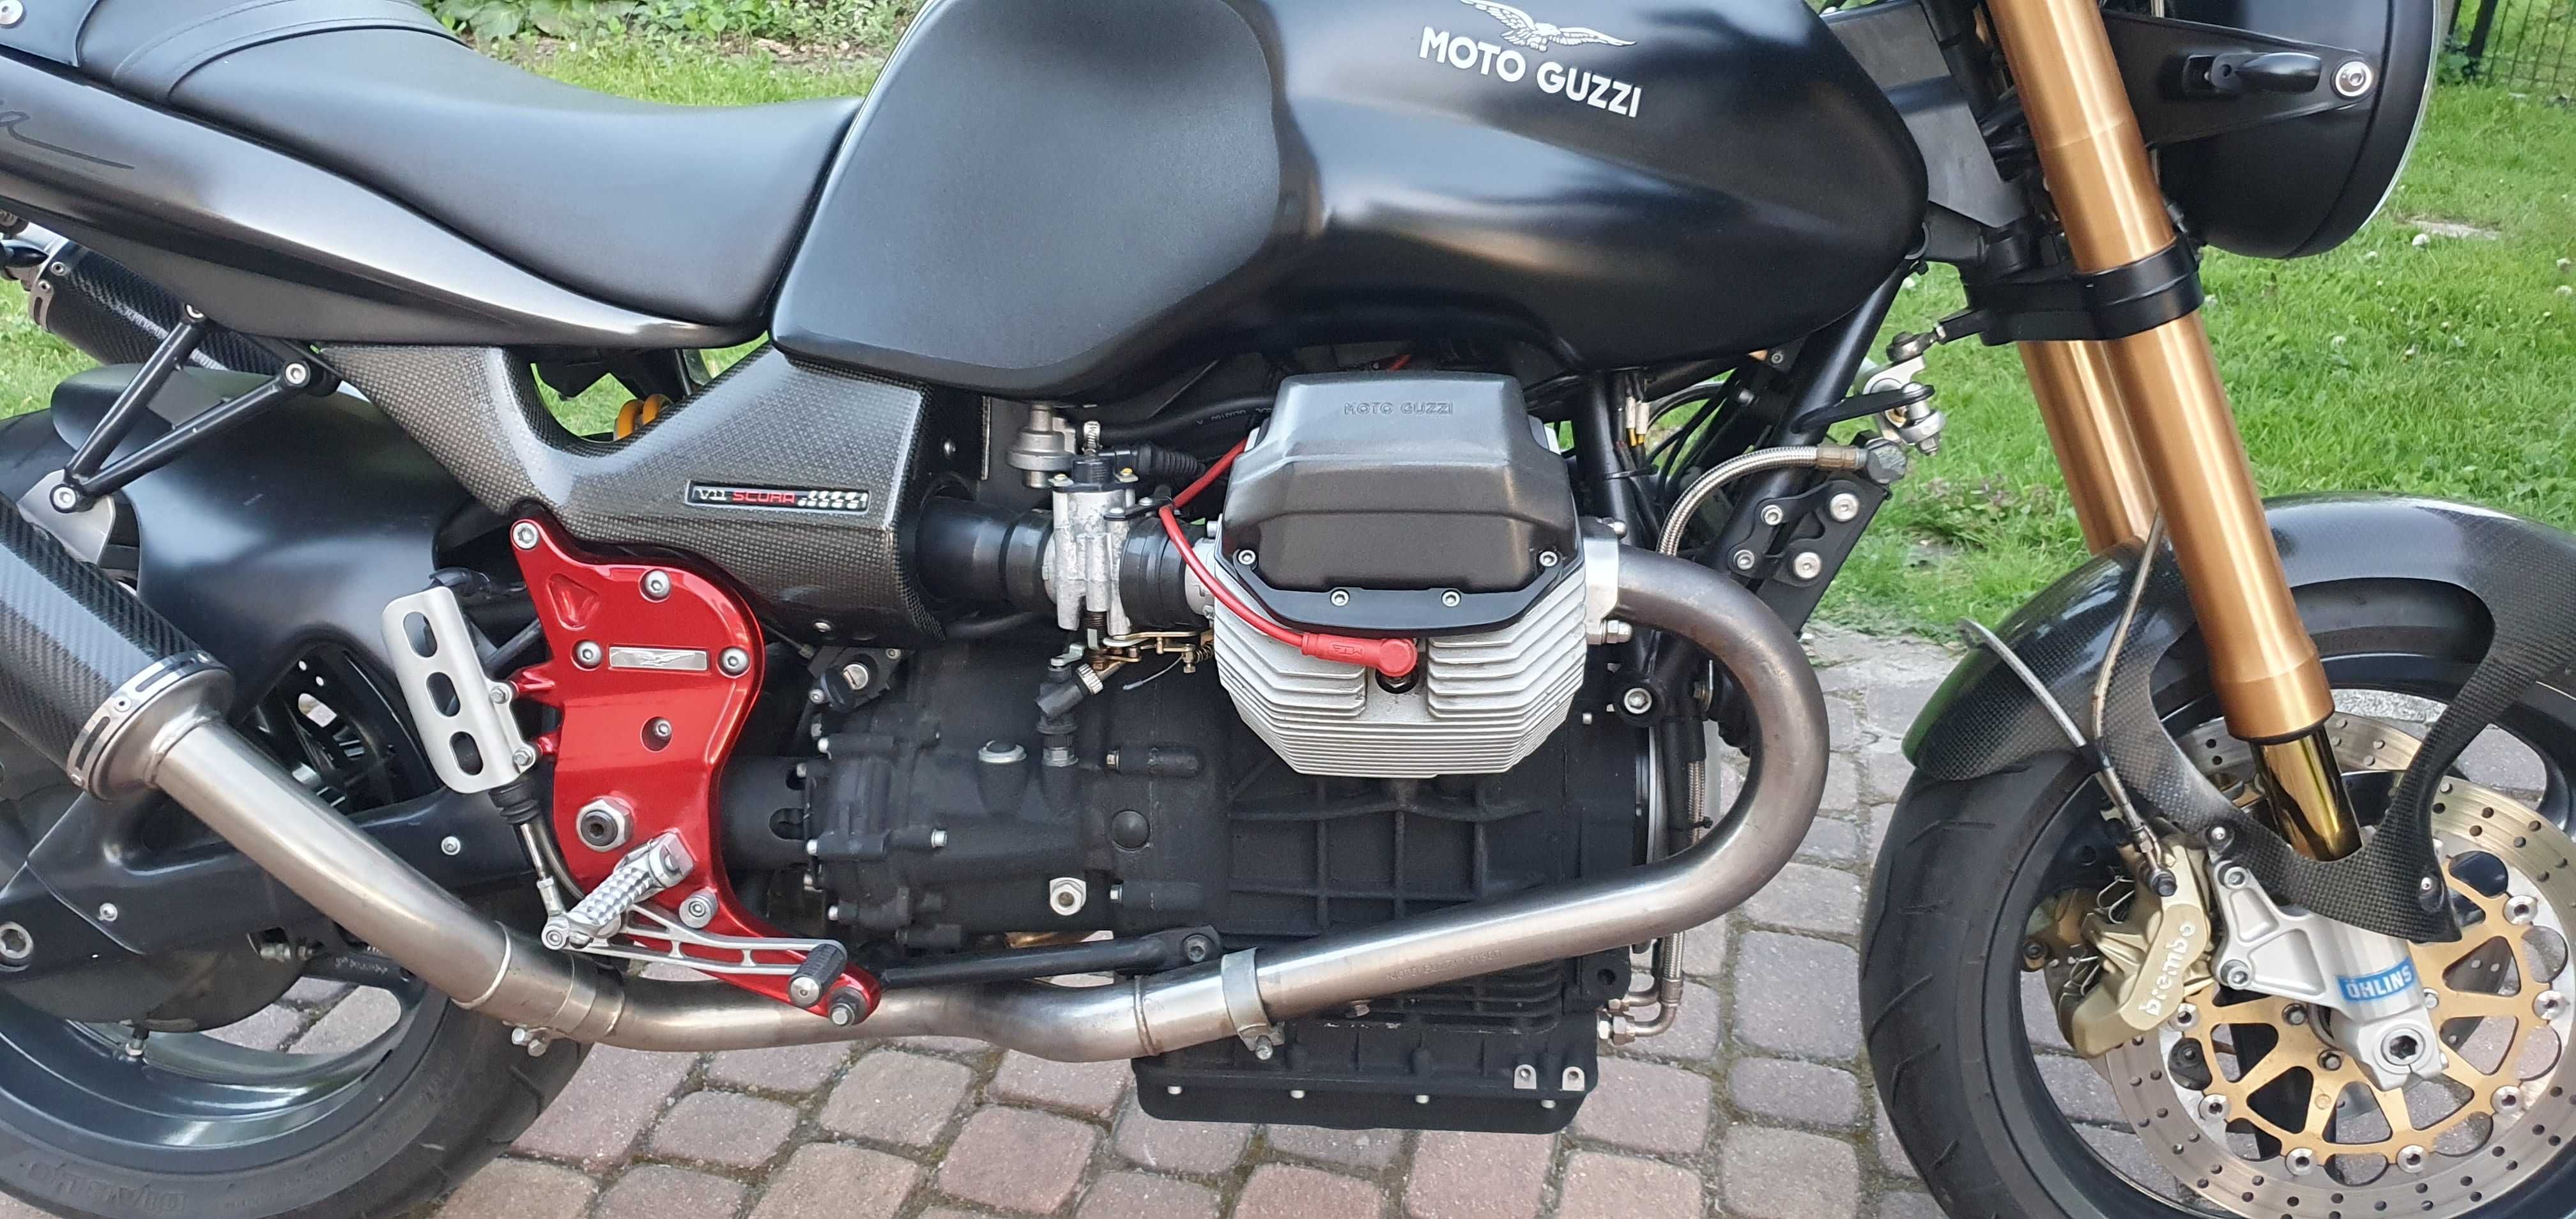 Moto Guzzi V11 scura.